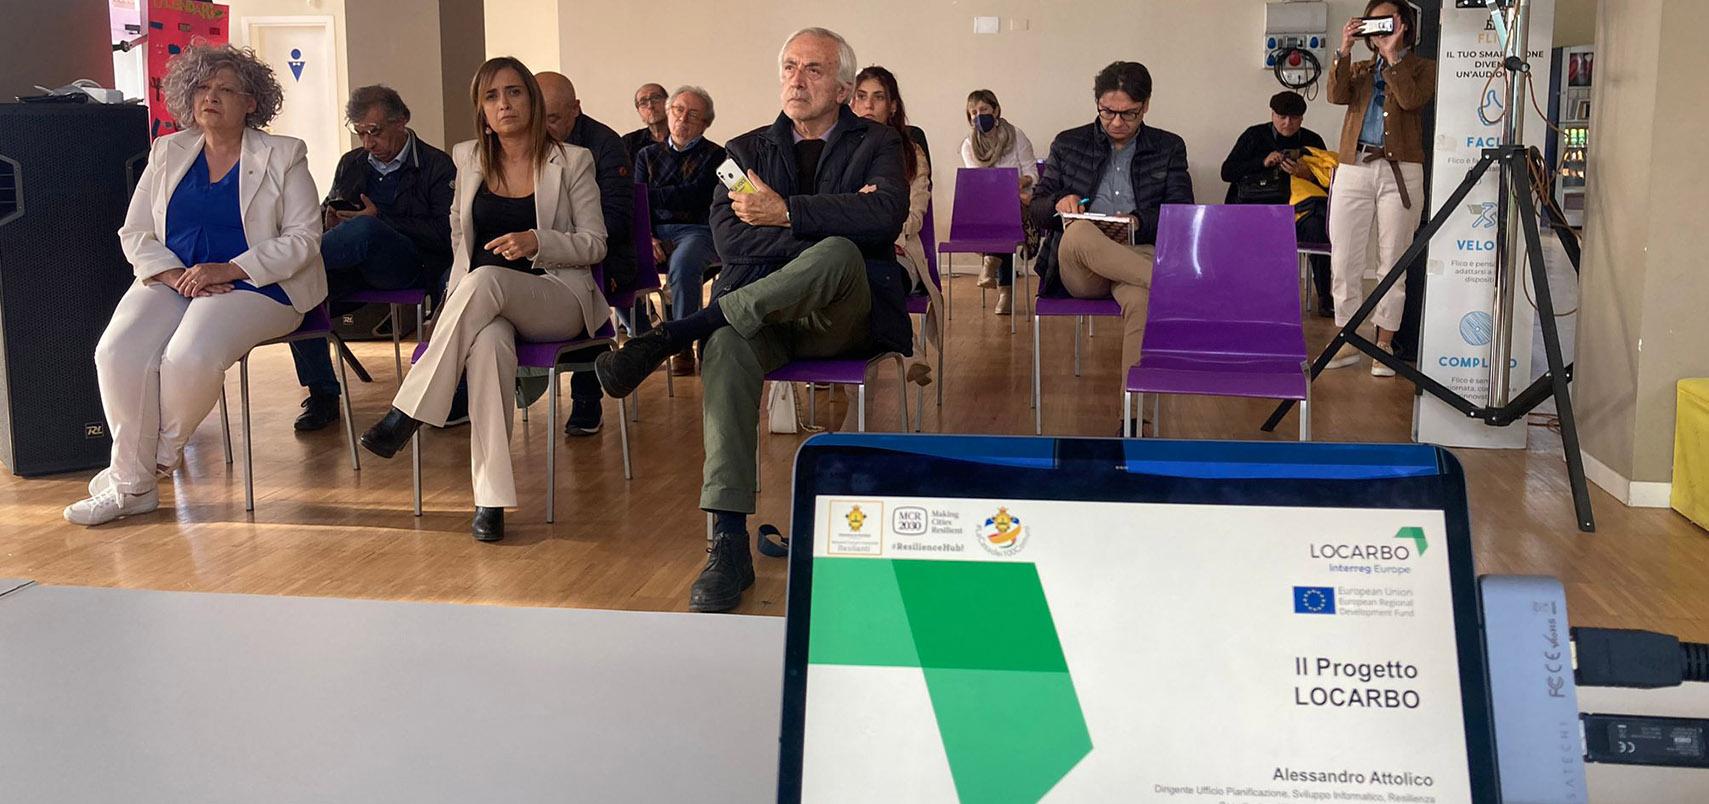 Progetto LOCARBO su energia sostenibile - Meeting a Rionero In Vulture - Le conclusioni del Presidente CHRISTIAN GIORDANO